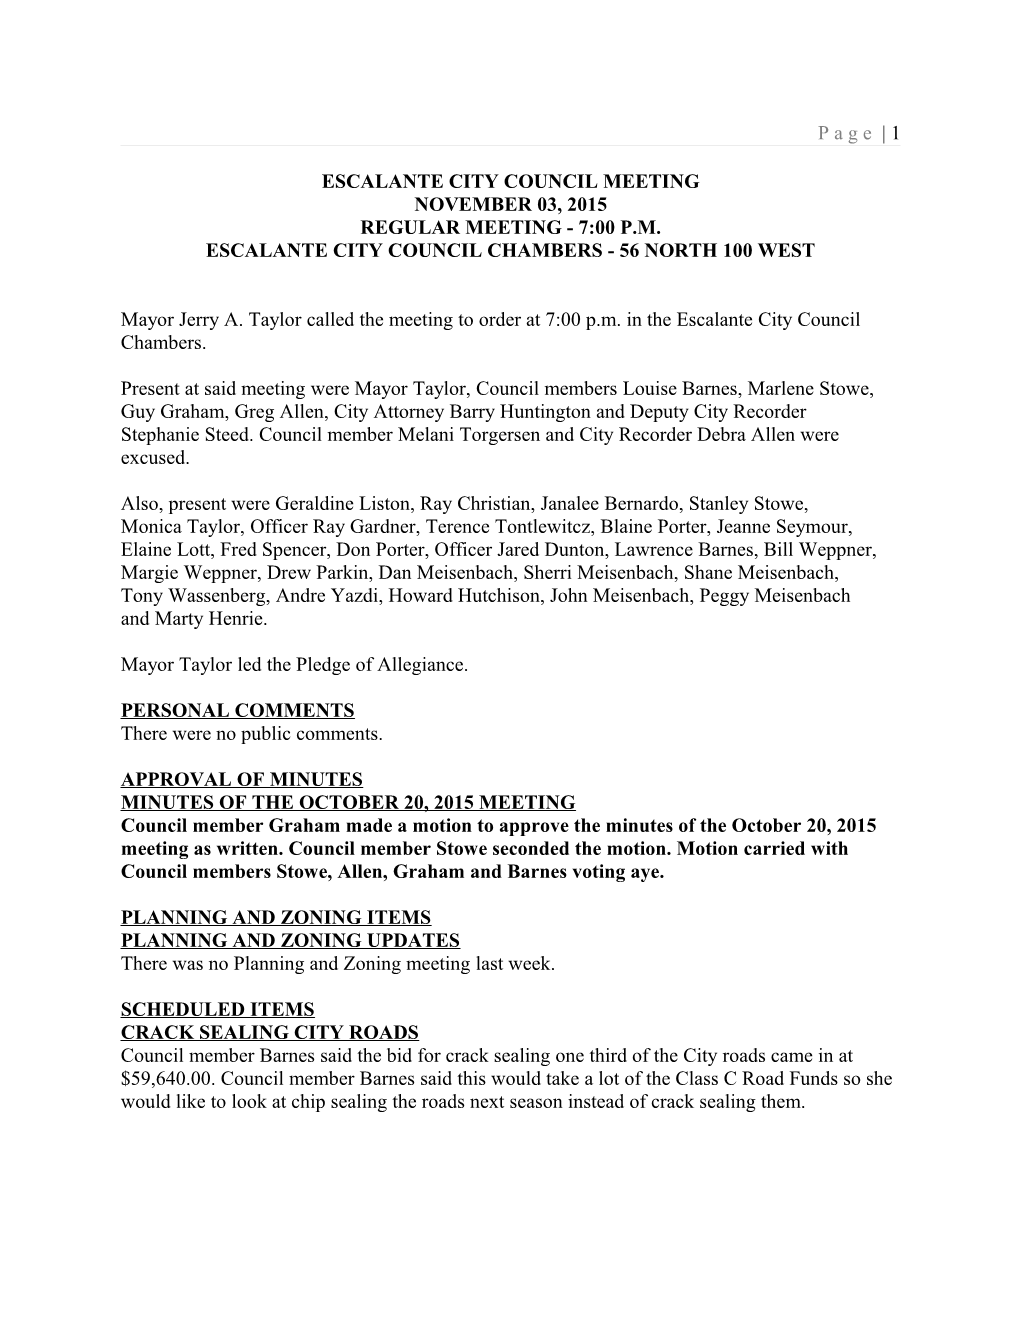 Escalante City Council Meeting s2